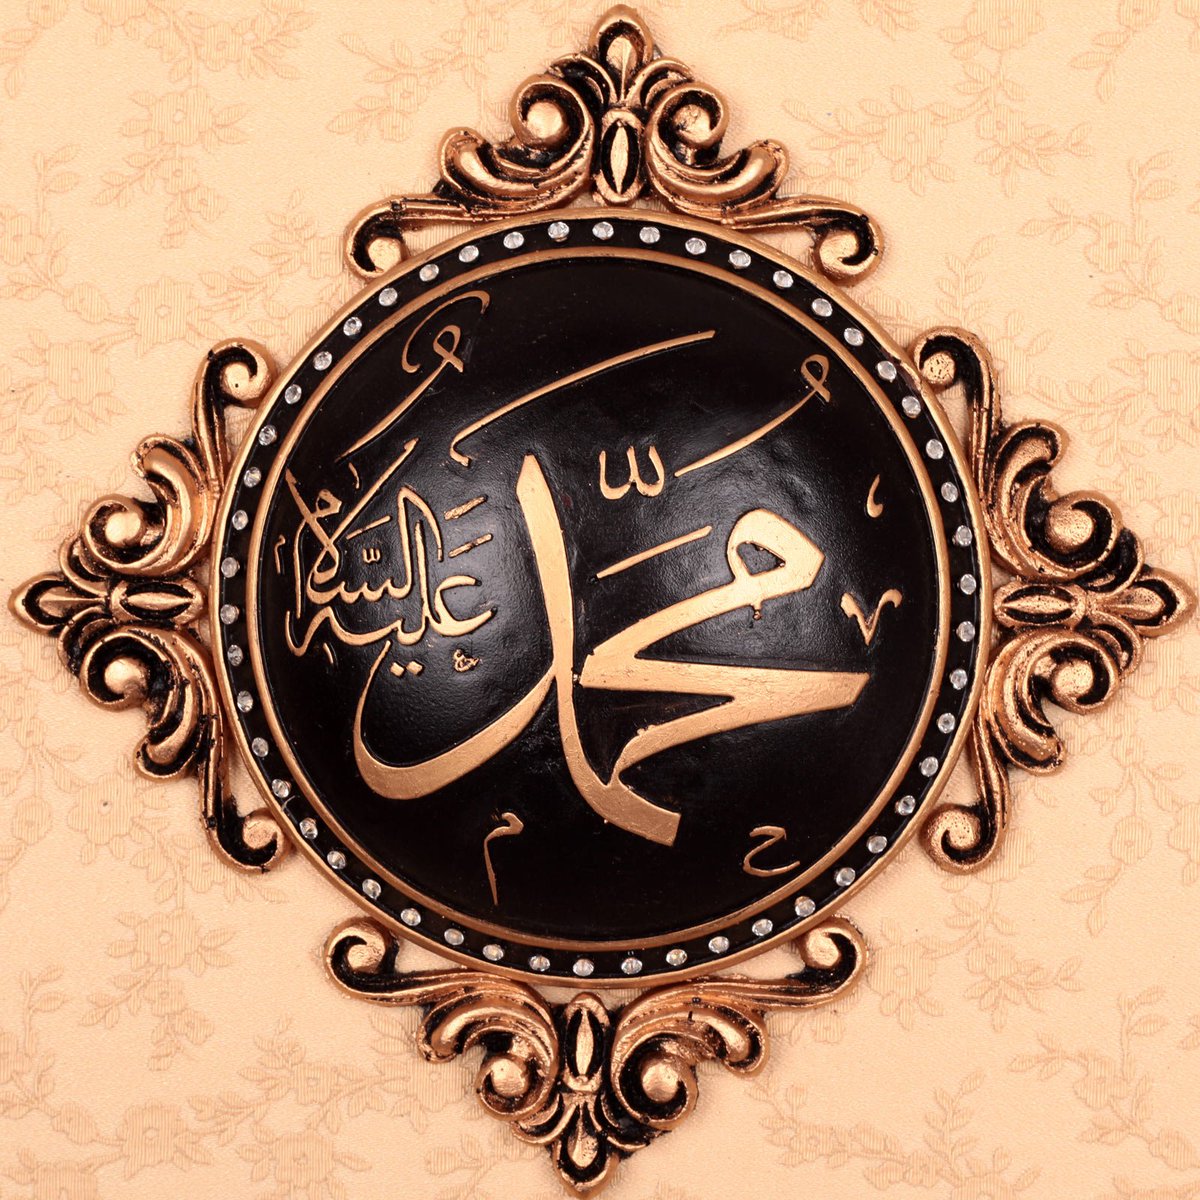 Мусульманские э. Имя пророка Мухаммеда на арабском. Имя пророка Мухаммеда. Мусульманские заставки. Мухаммед пророк на арабском.